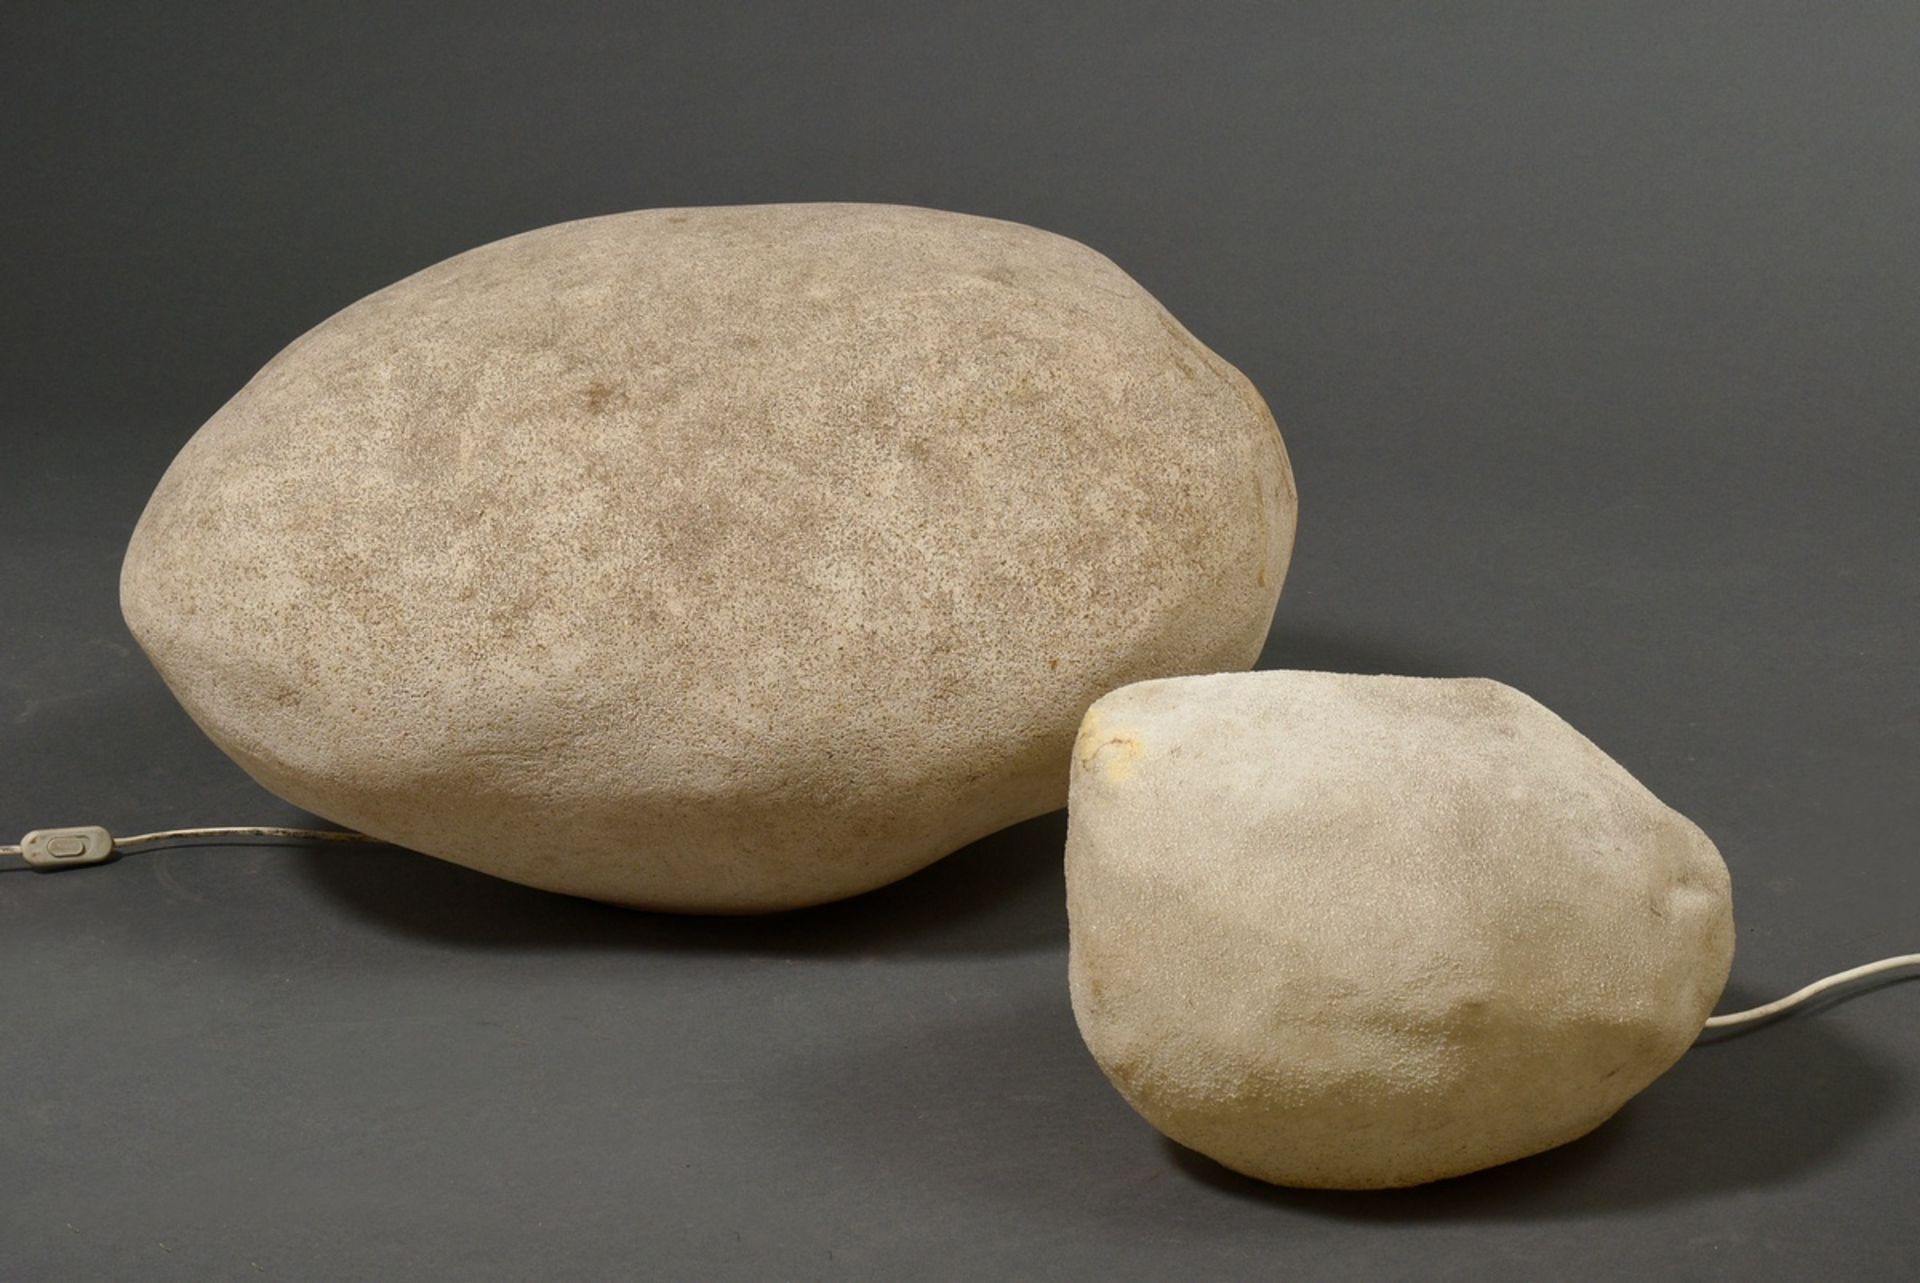 2 Diverse Kunststoff Leuchtobjekte in naturalistischer Stein Form, ca. 25x26x32cm und 42x70x50cm, 1